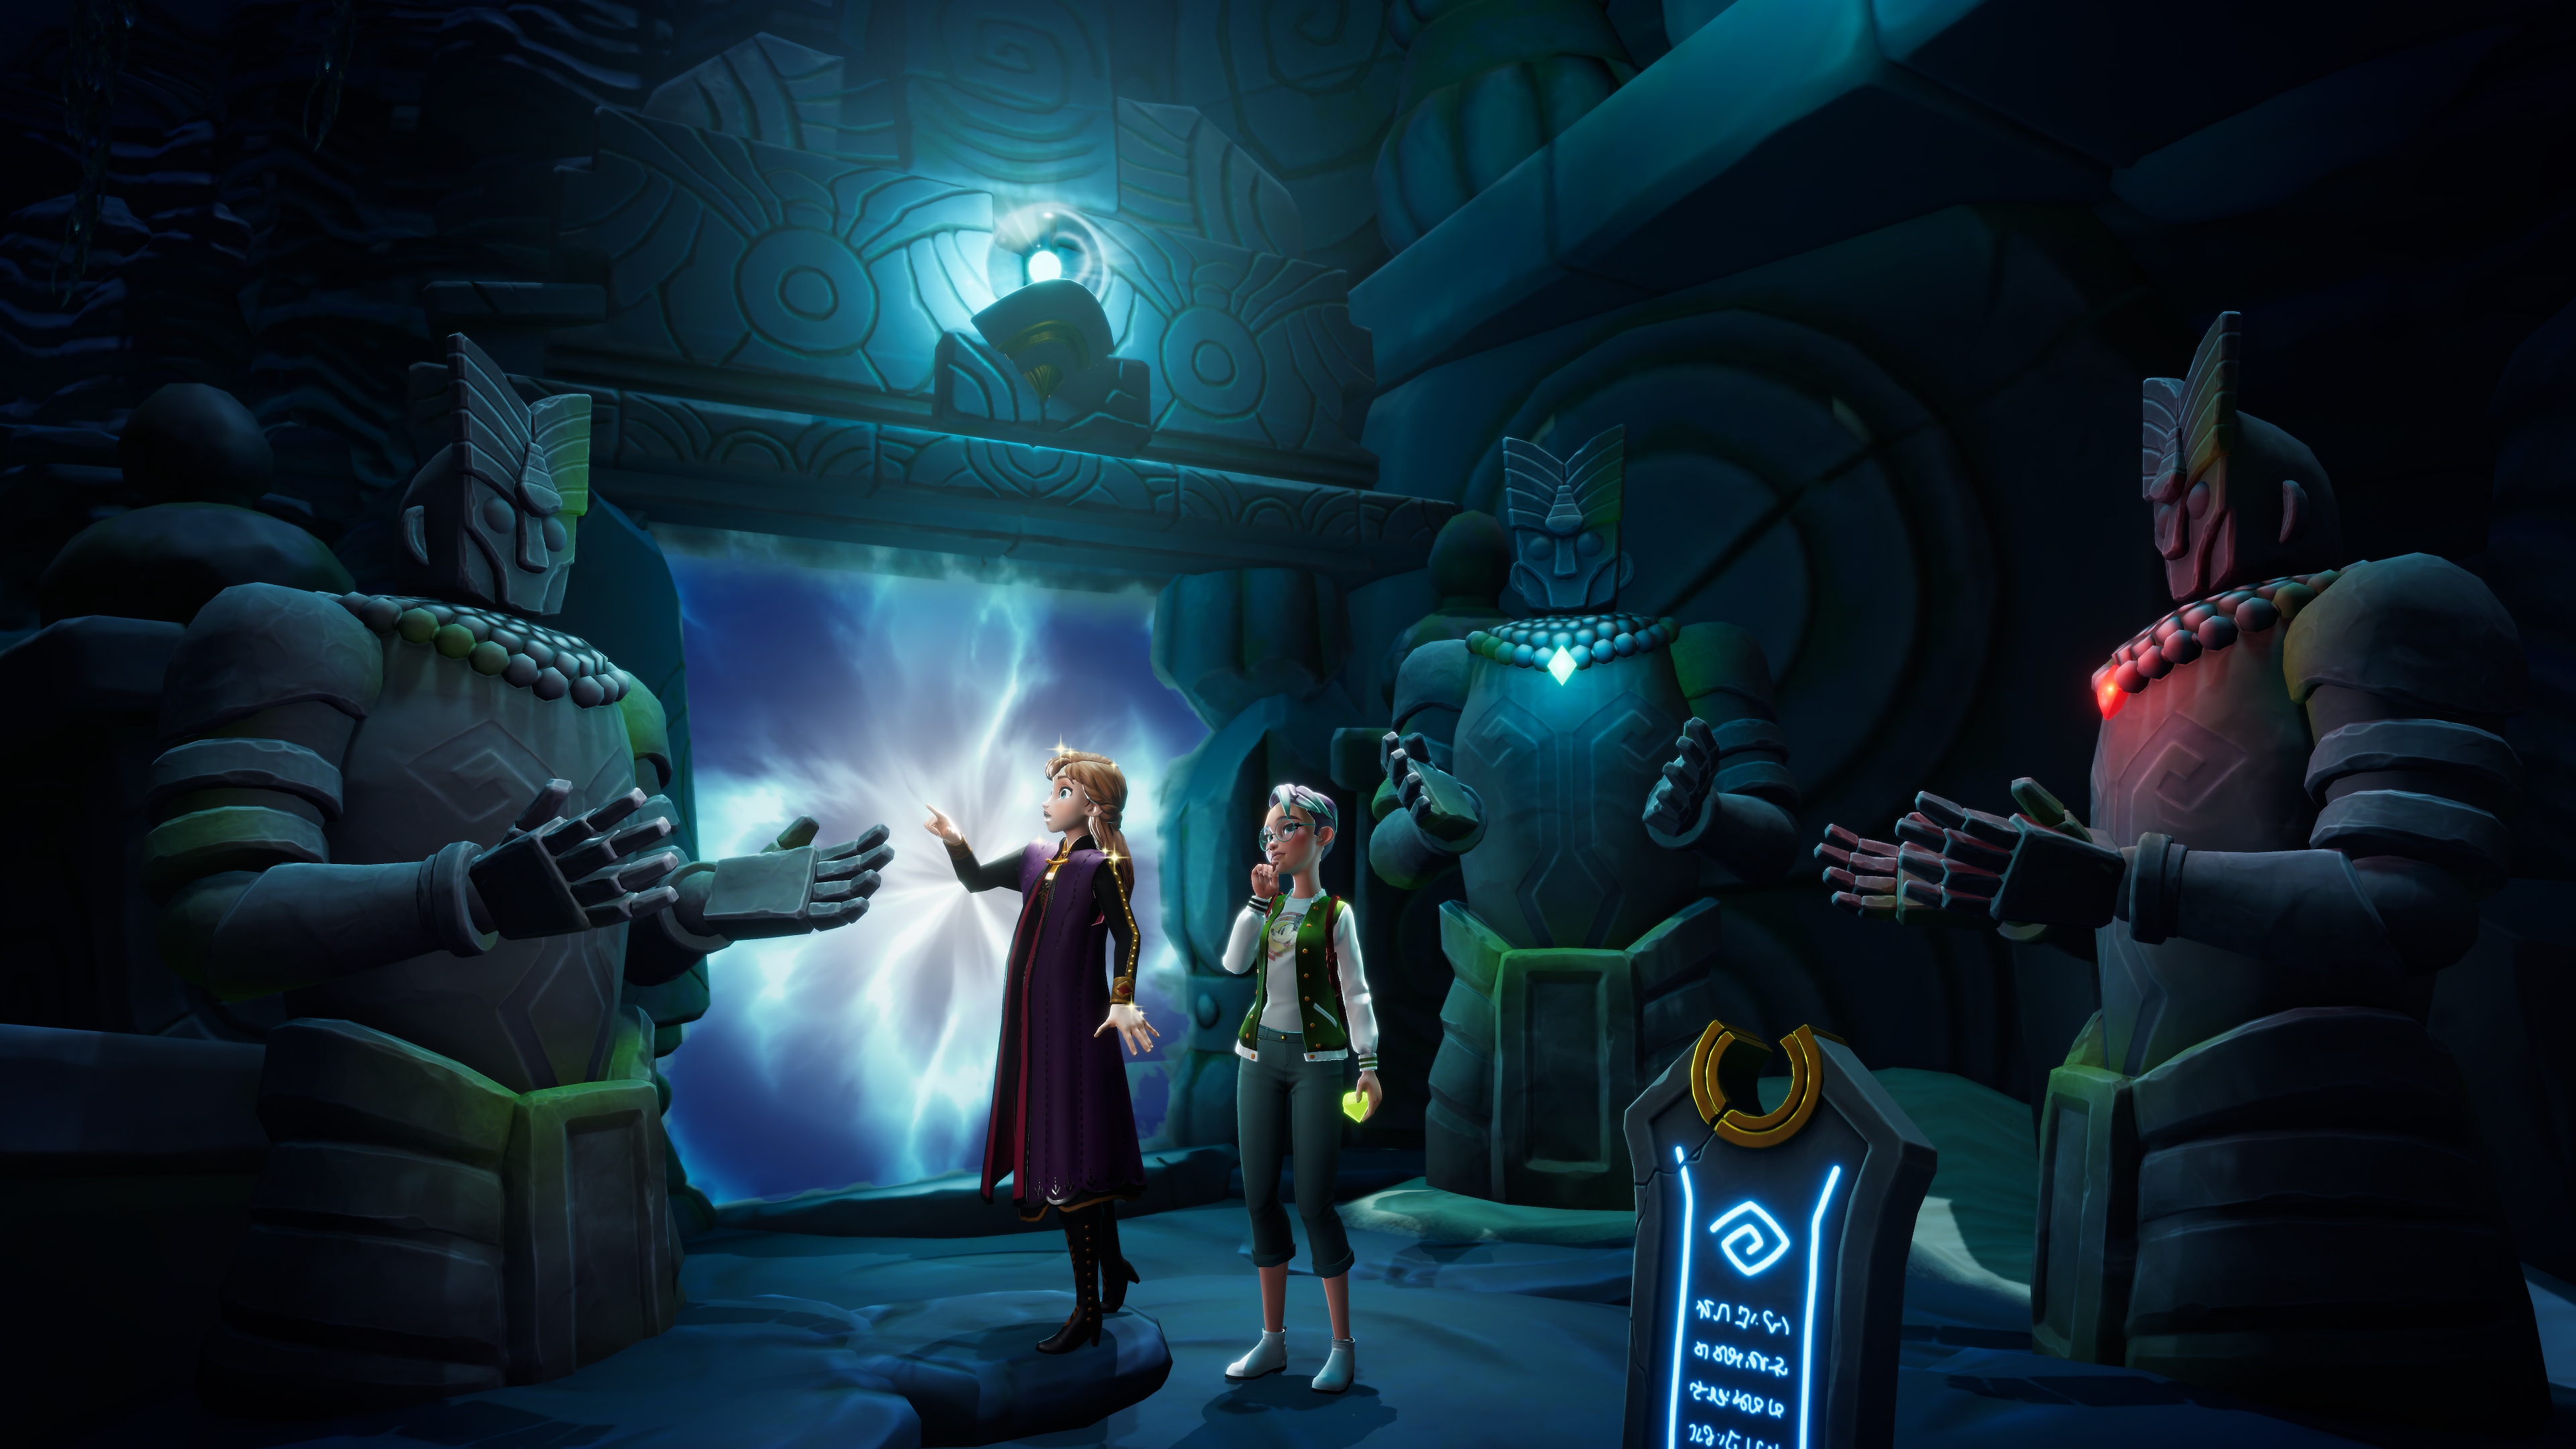 Disney Dreamlight Valley - Capture d'écran avec deux personnages entourés de statues